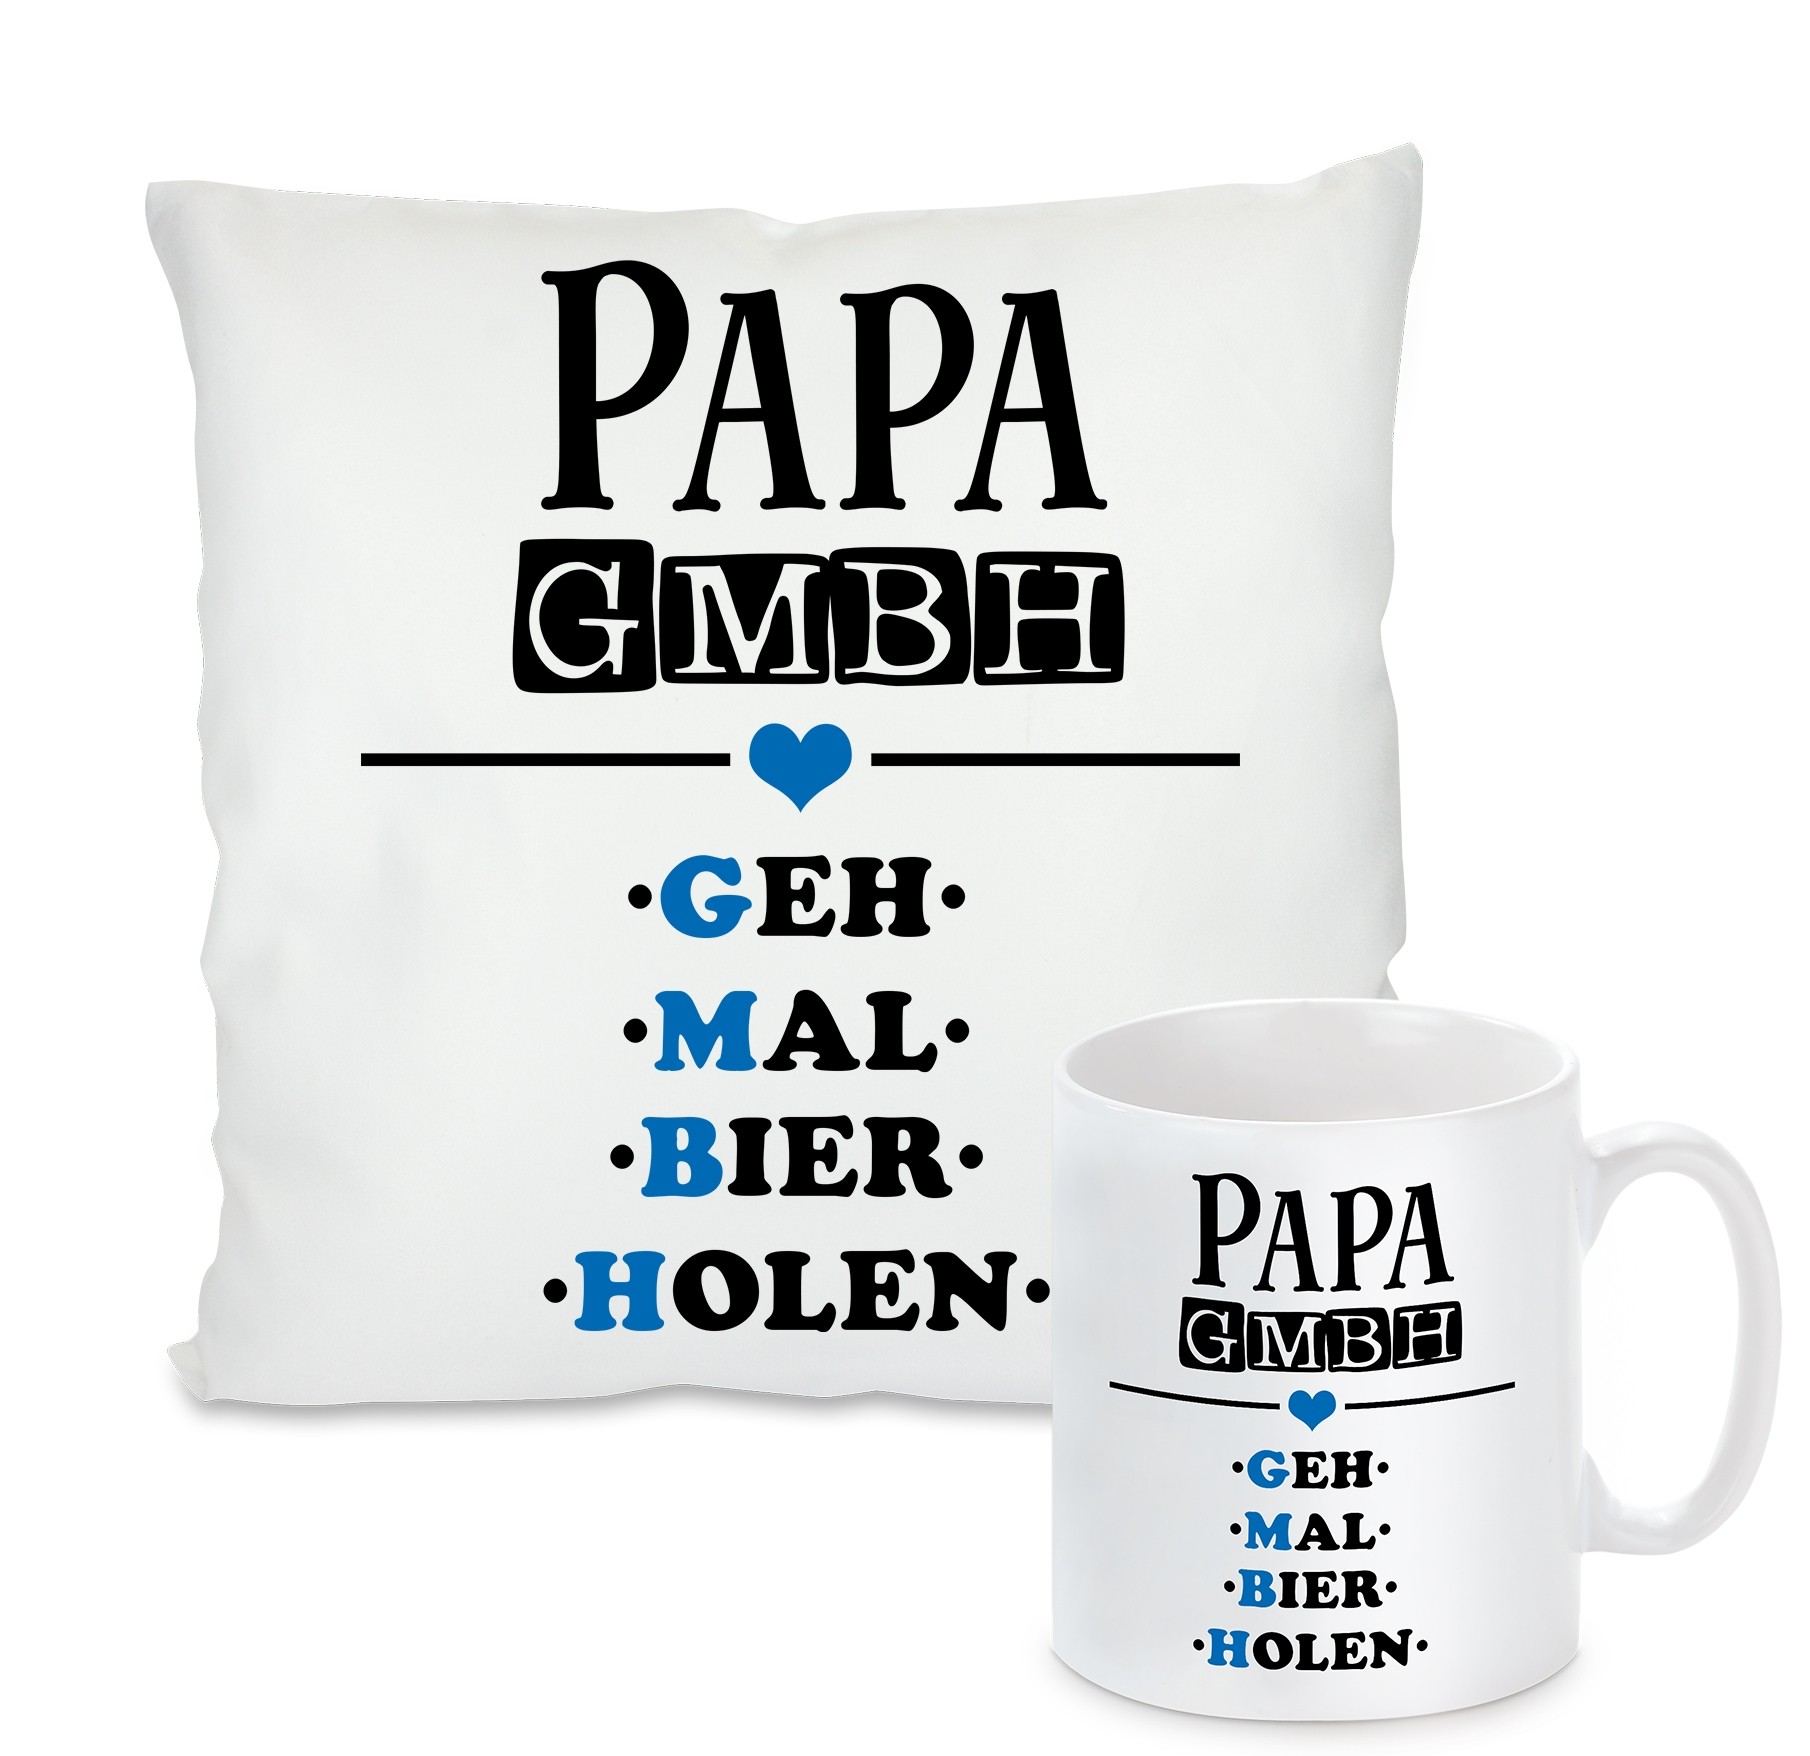 Kissen oder Tasse: Papa GmbH